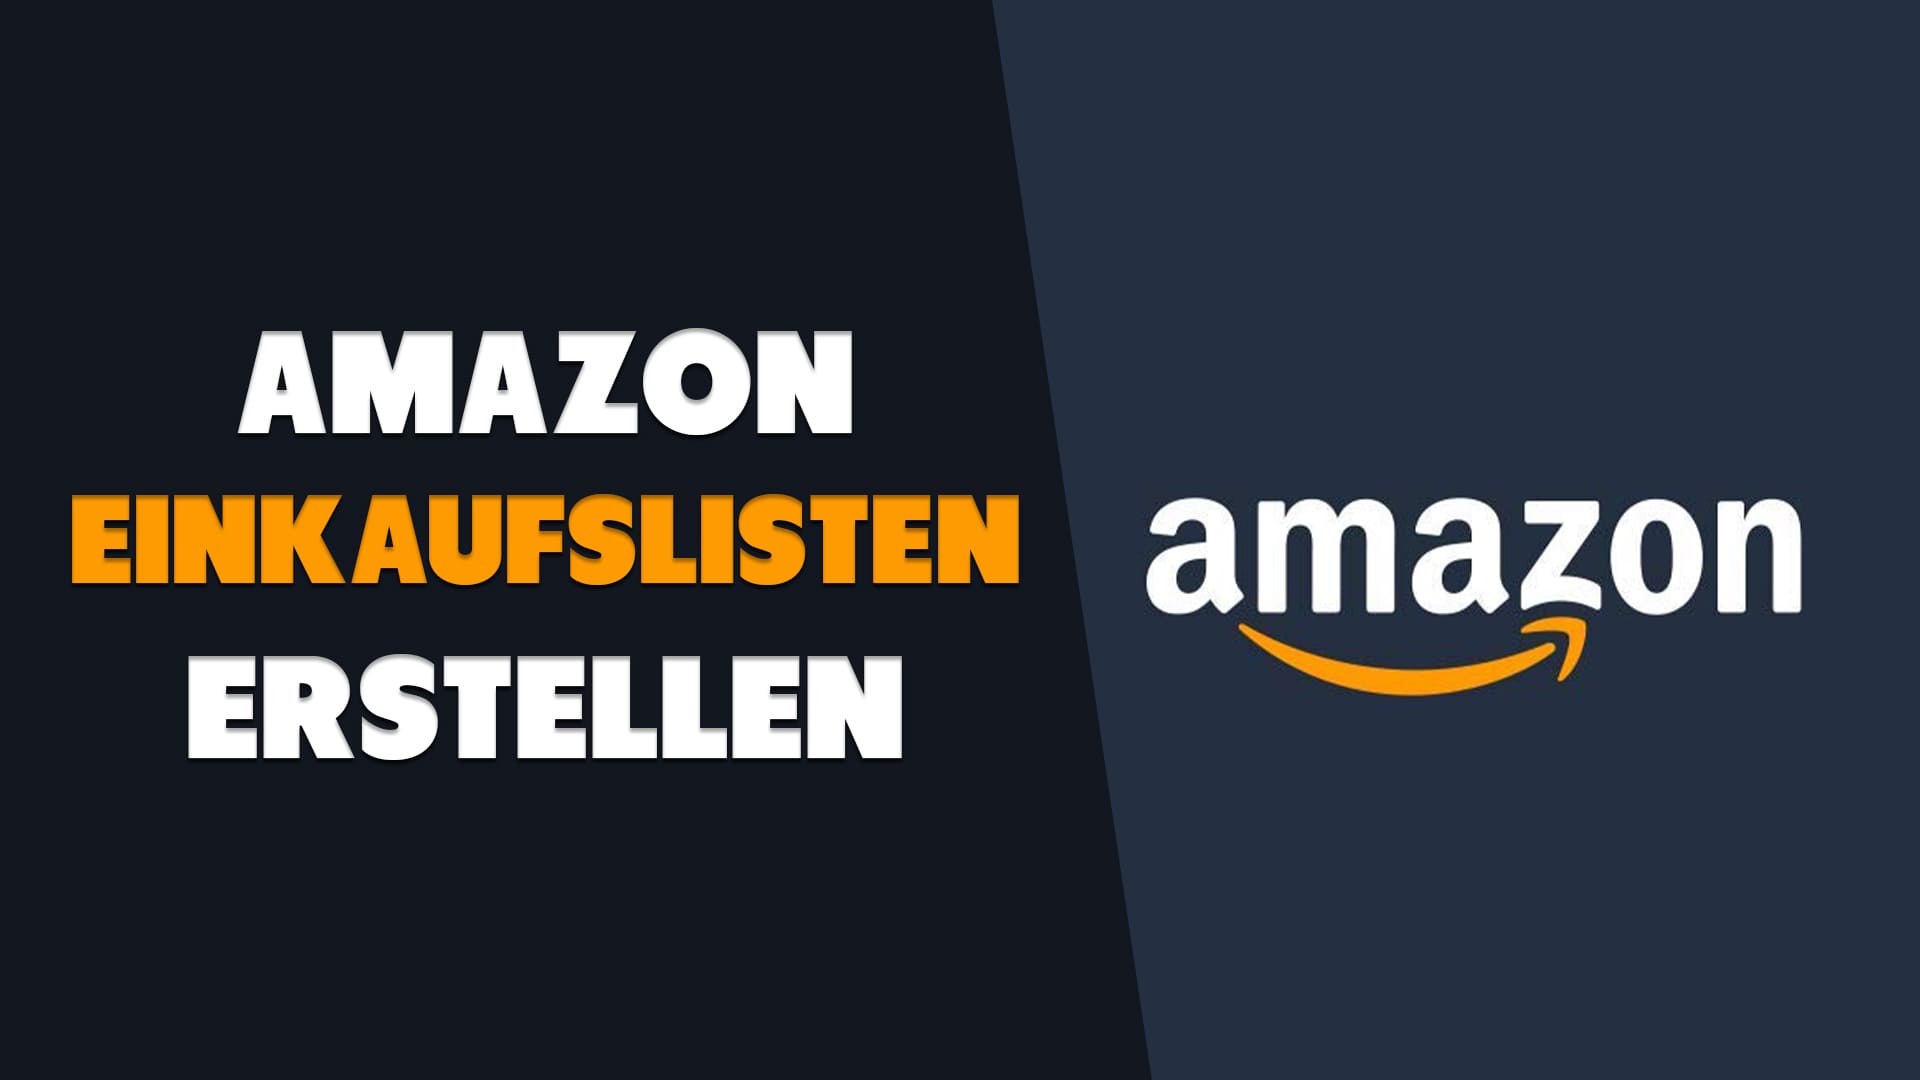 Amazon Einkaufslisten Erstellen - Haton.net